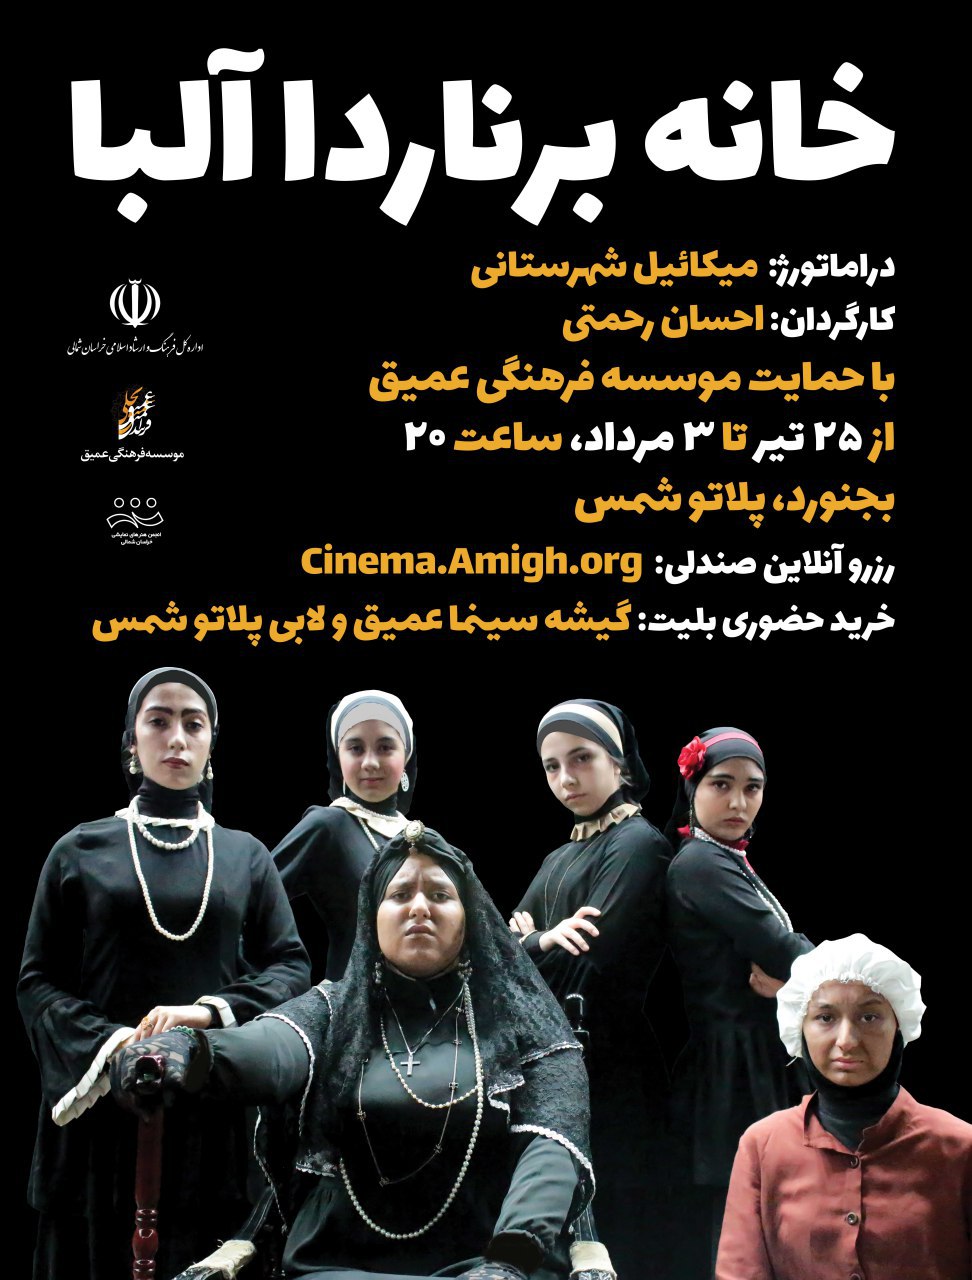 پوستر فيلم تئاتر خانه برناردا آلبا